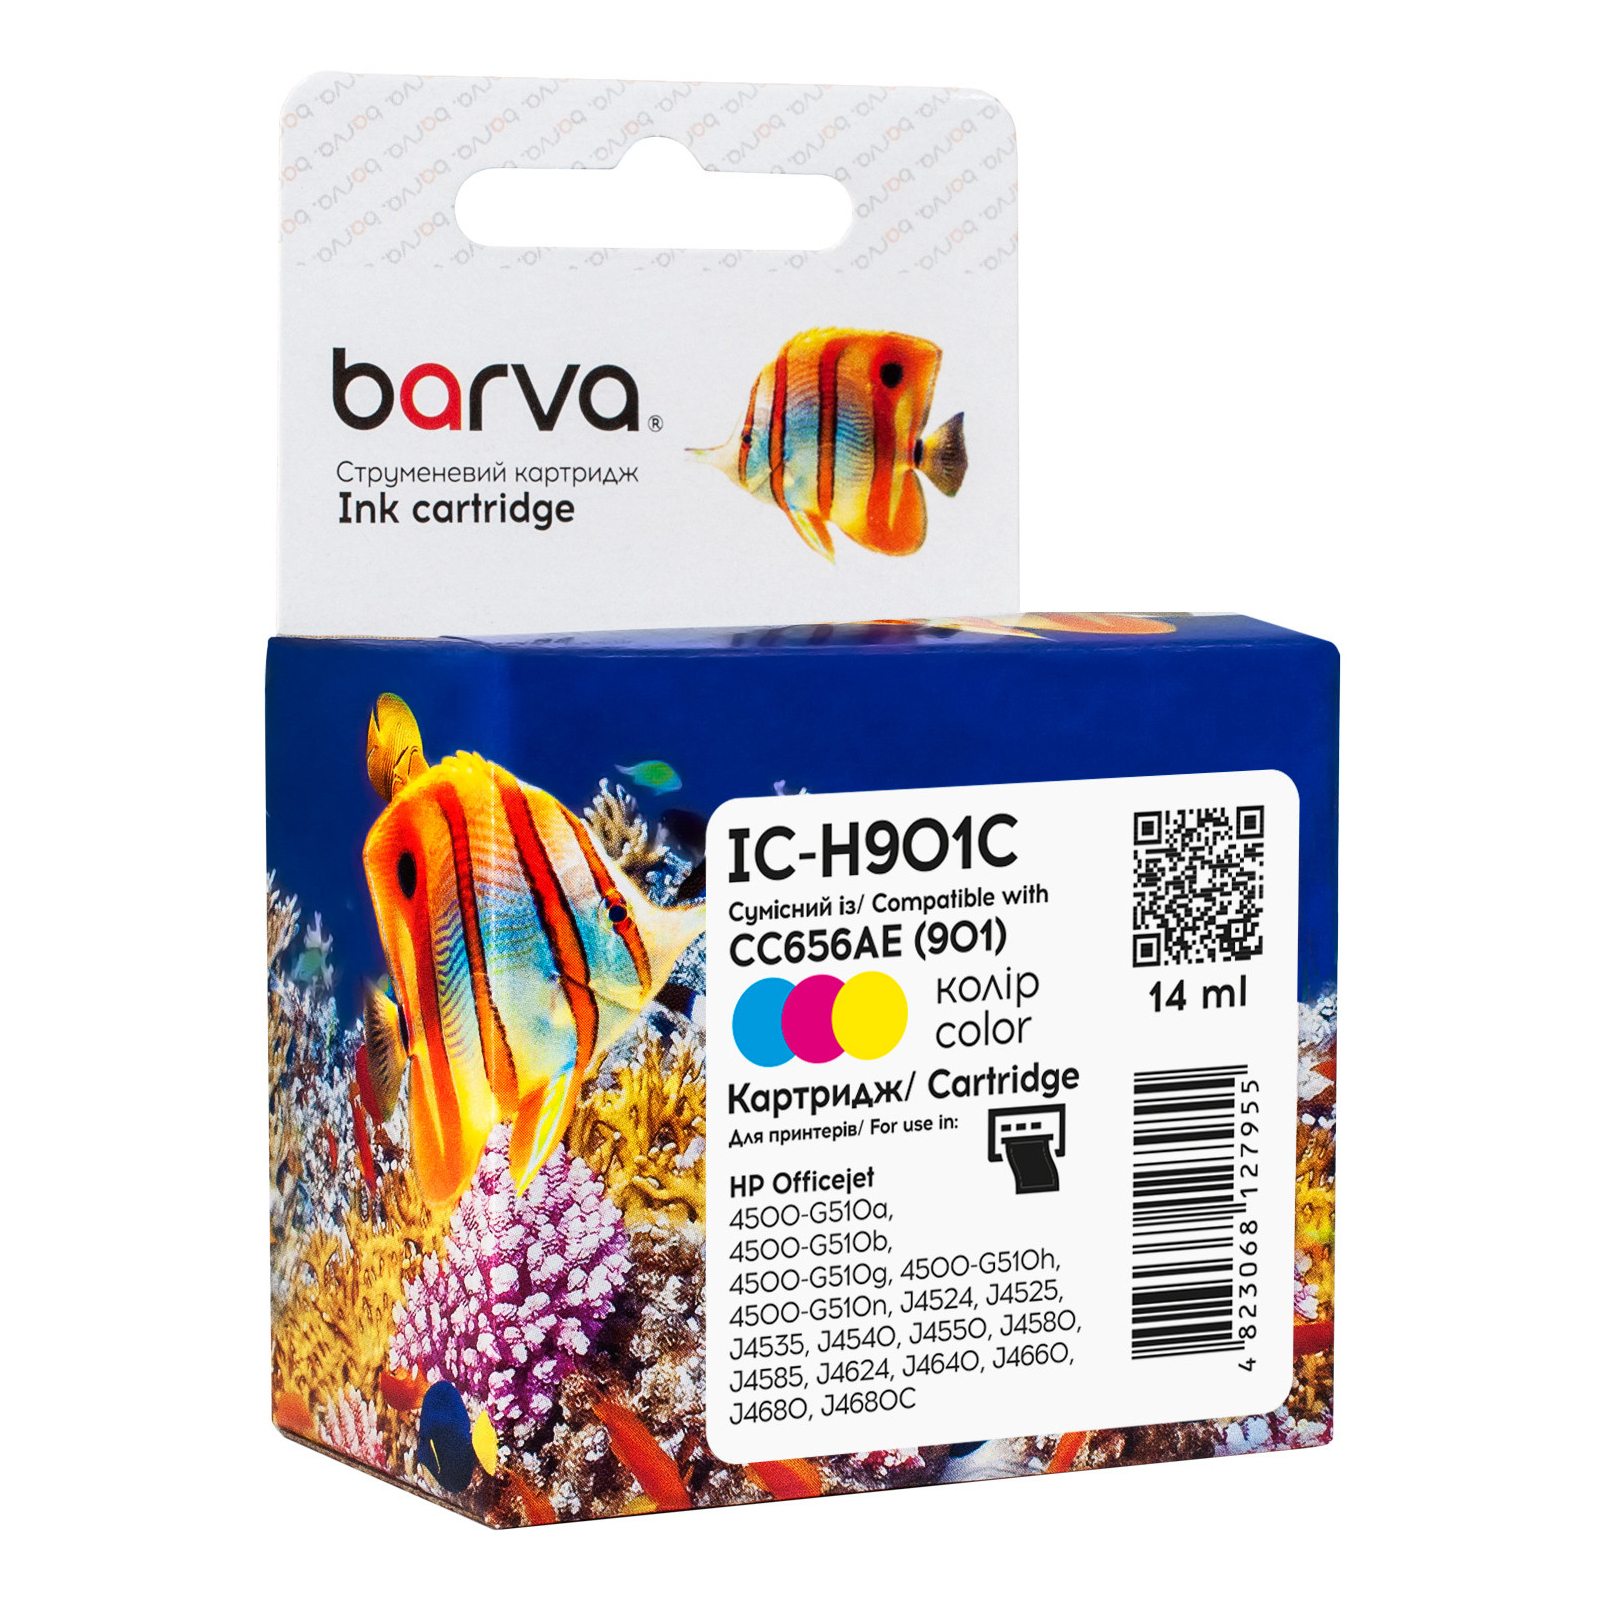 Картридж Barva HP 901 color/CC656AE, 14 мл (IC-H901C)